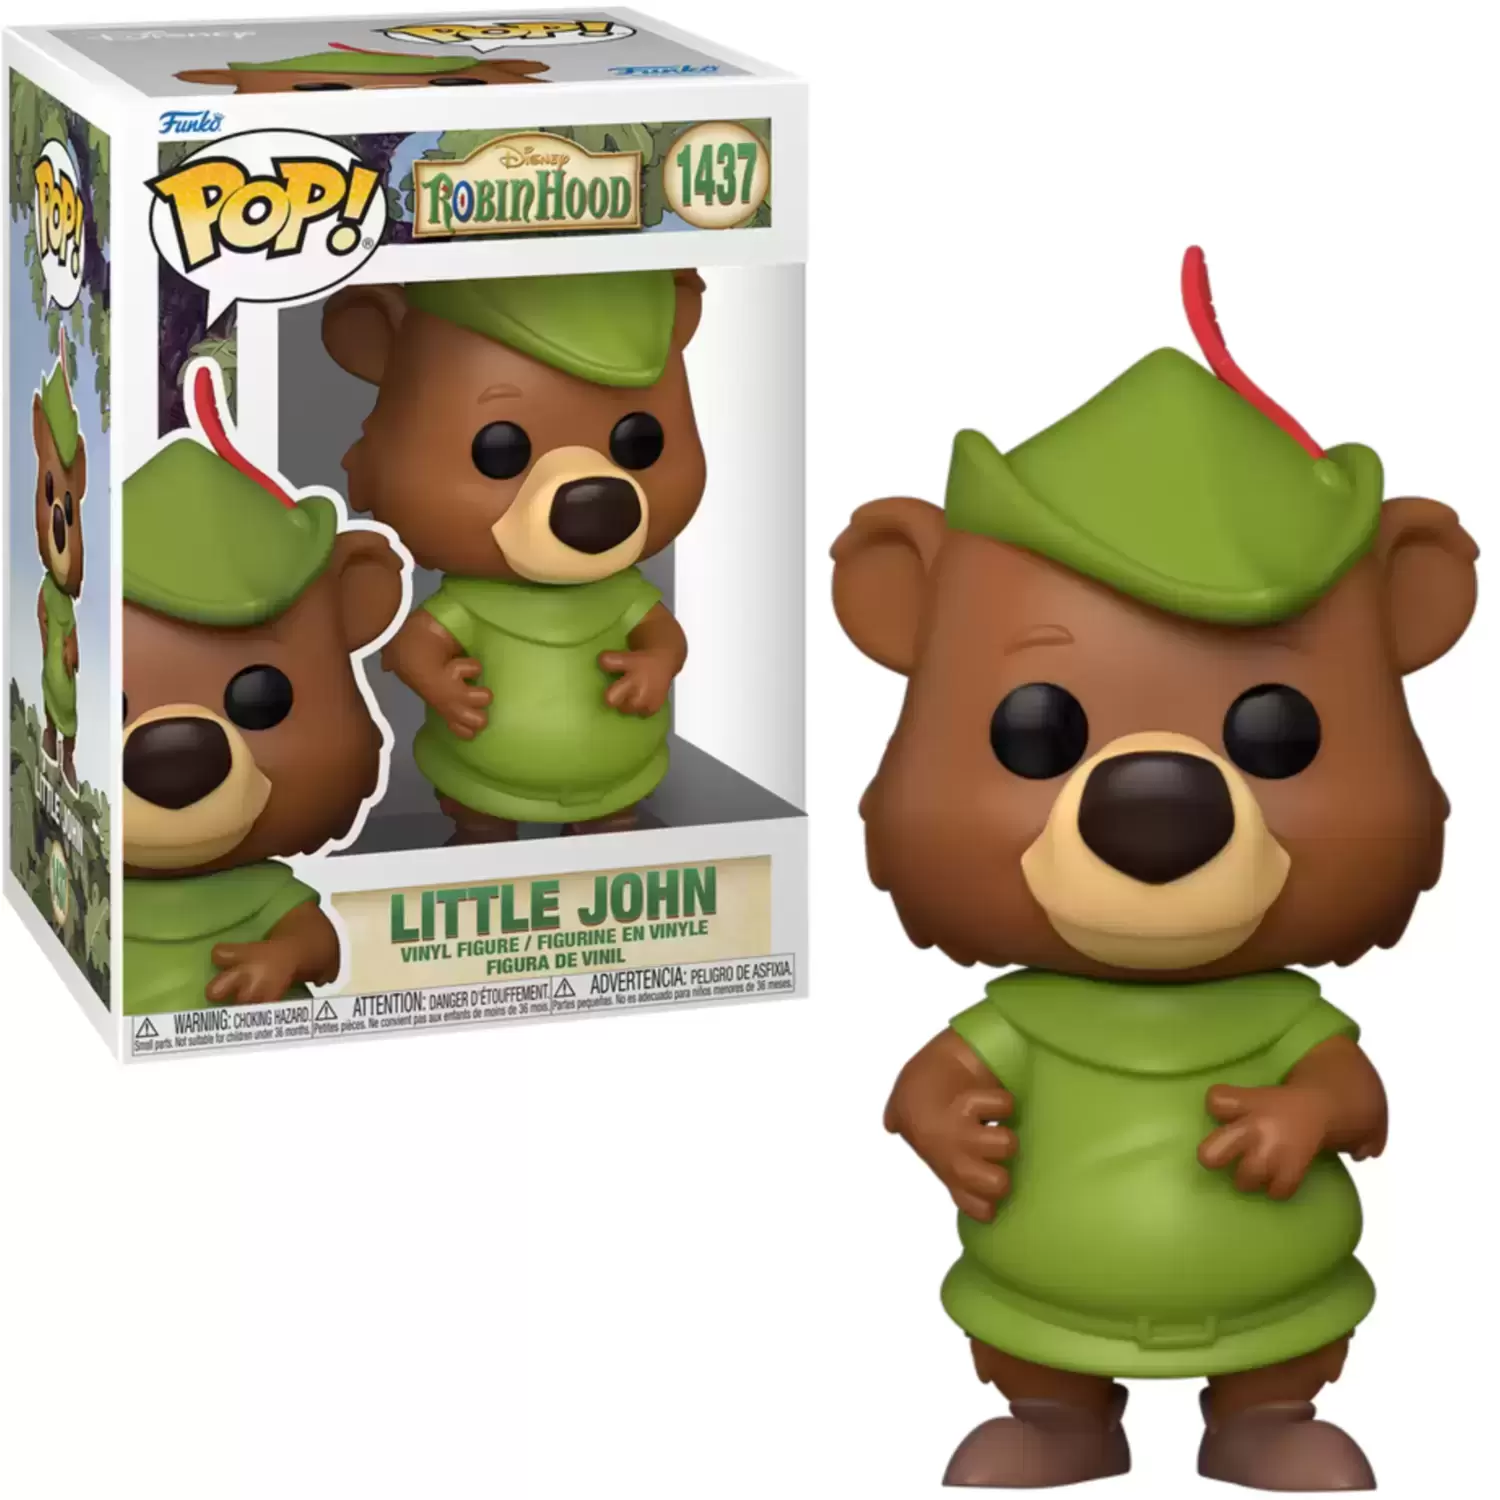 POP! Disney - Robin Hood - Little John